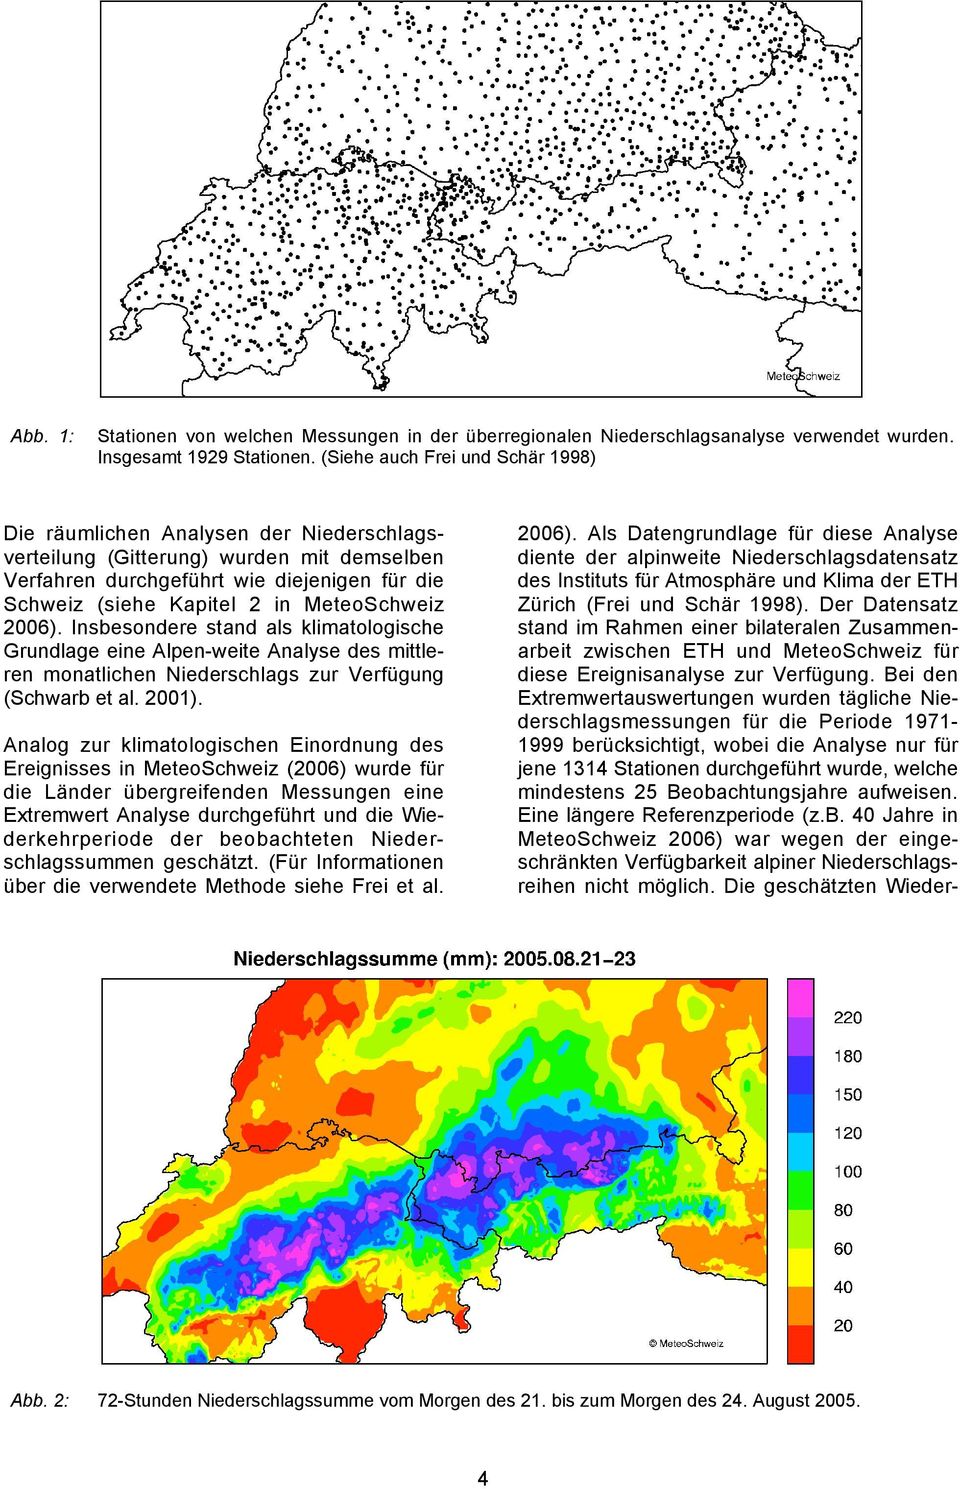 MeteoSchweiz 2006). Insbesondere stand als klimatologische Grundlage eine Alpen-weite Analyse des mittleren monatlichen Niederschlags zur Verfügung (Schwarb et al. 2001).